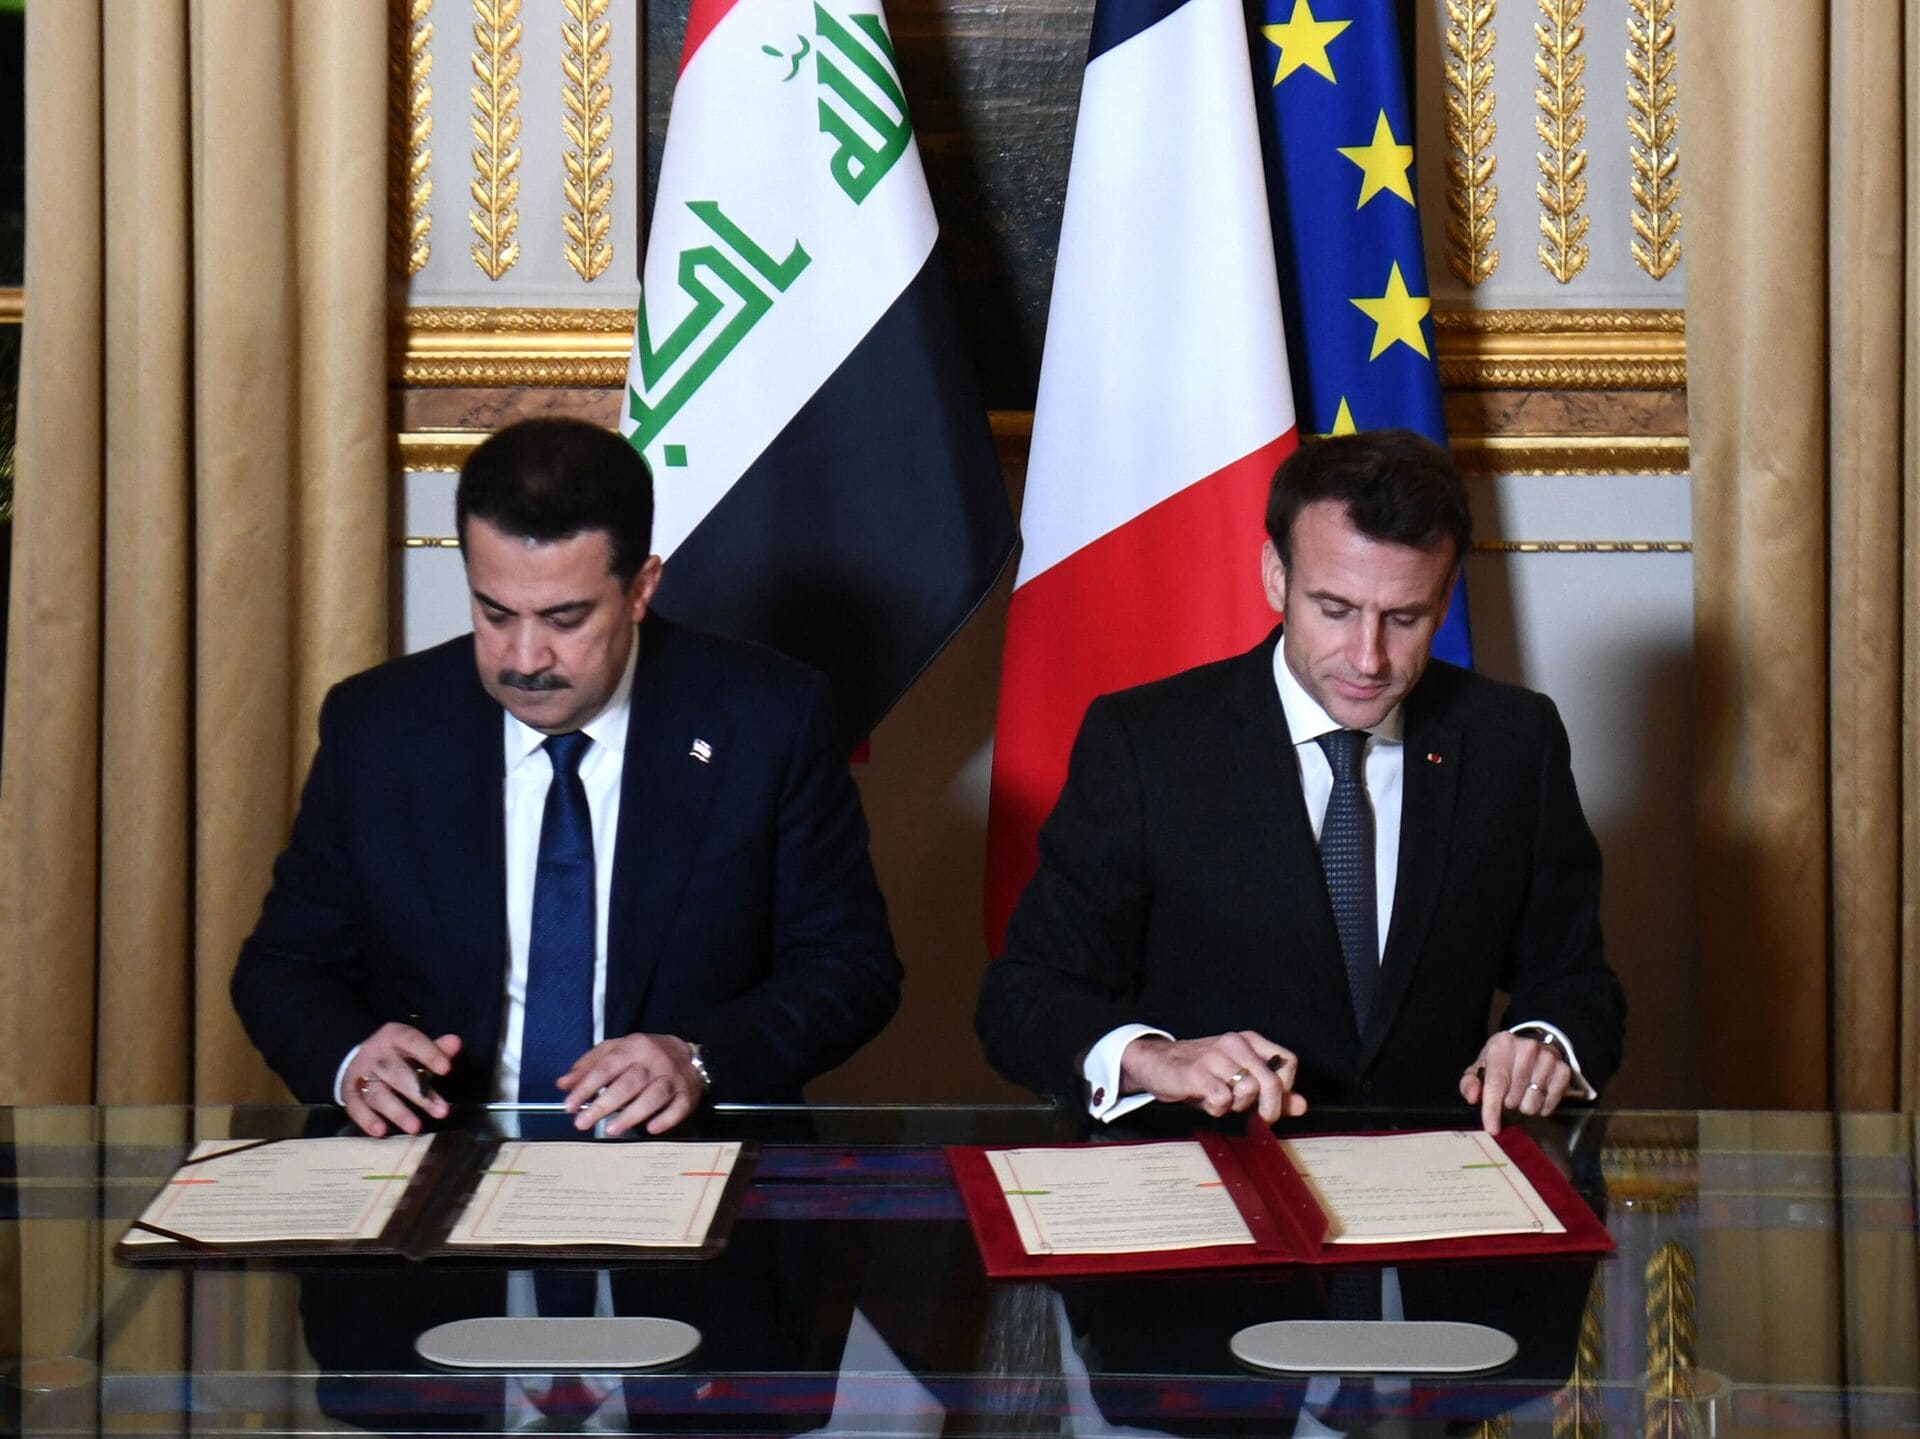 العراق: زيارة رئيس الوزراء لباريس نقلت العلاقة الثنائية إلى أفق استراتيجي متعدد المصالح